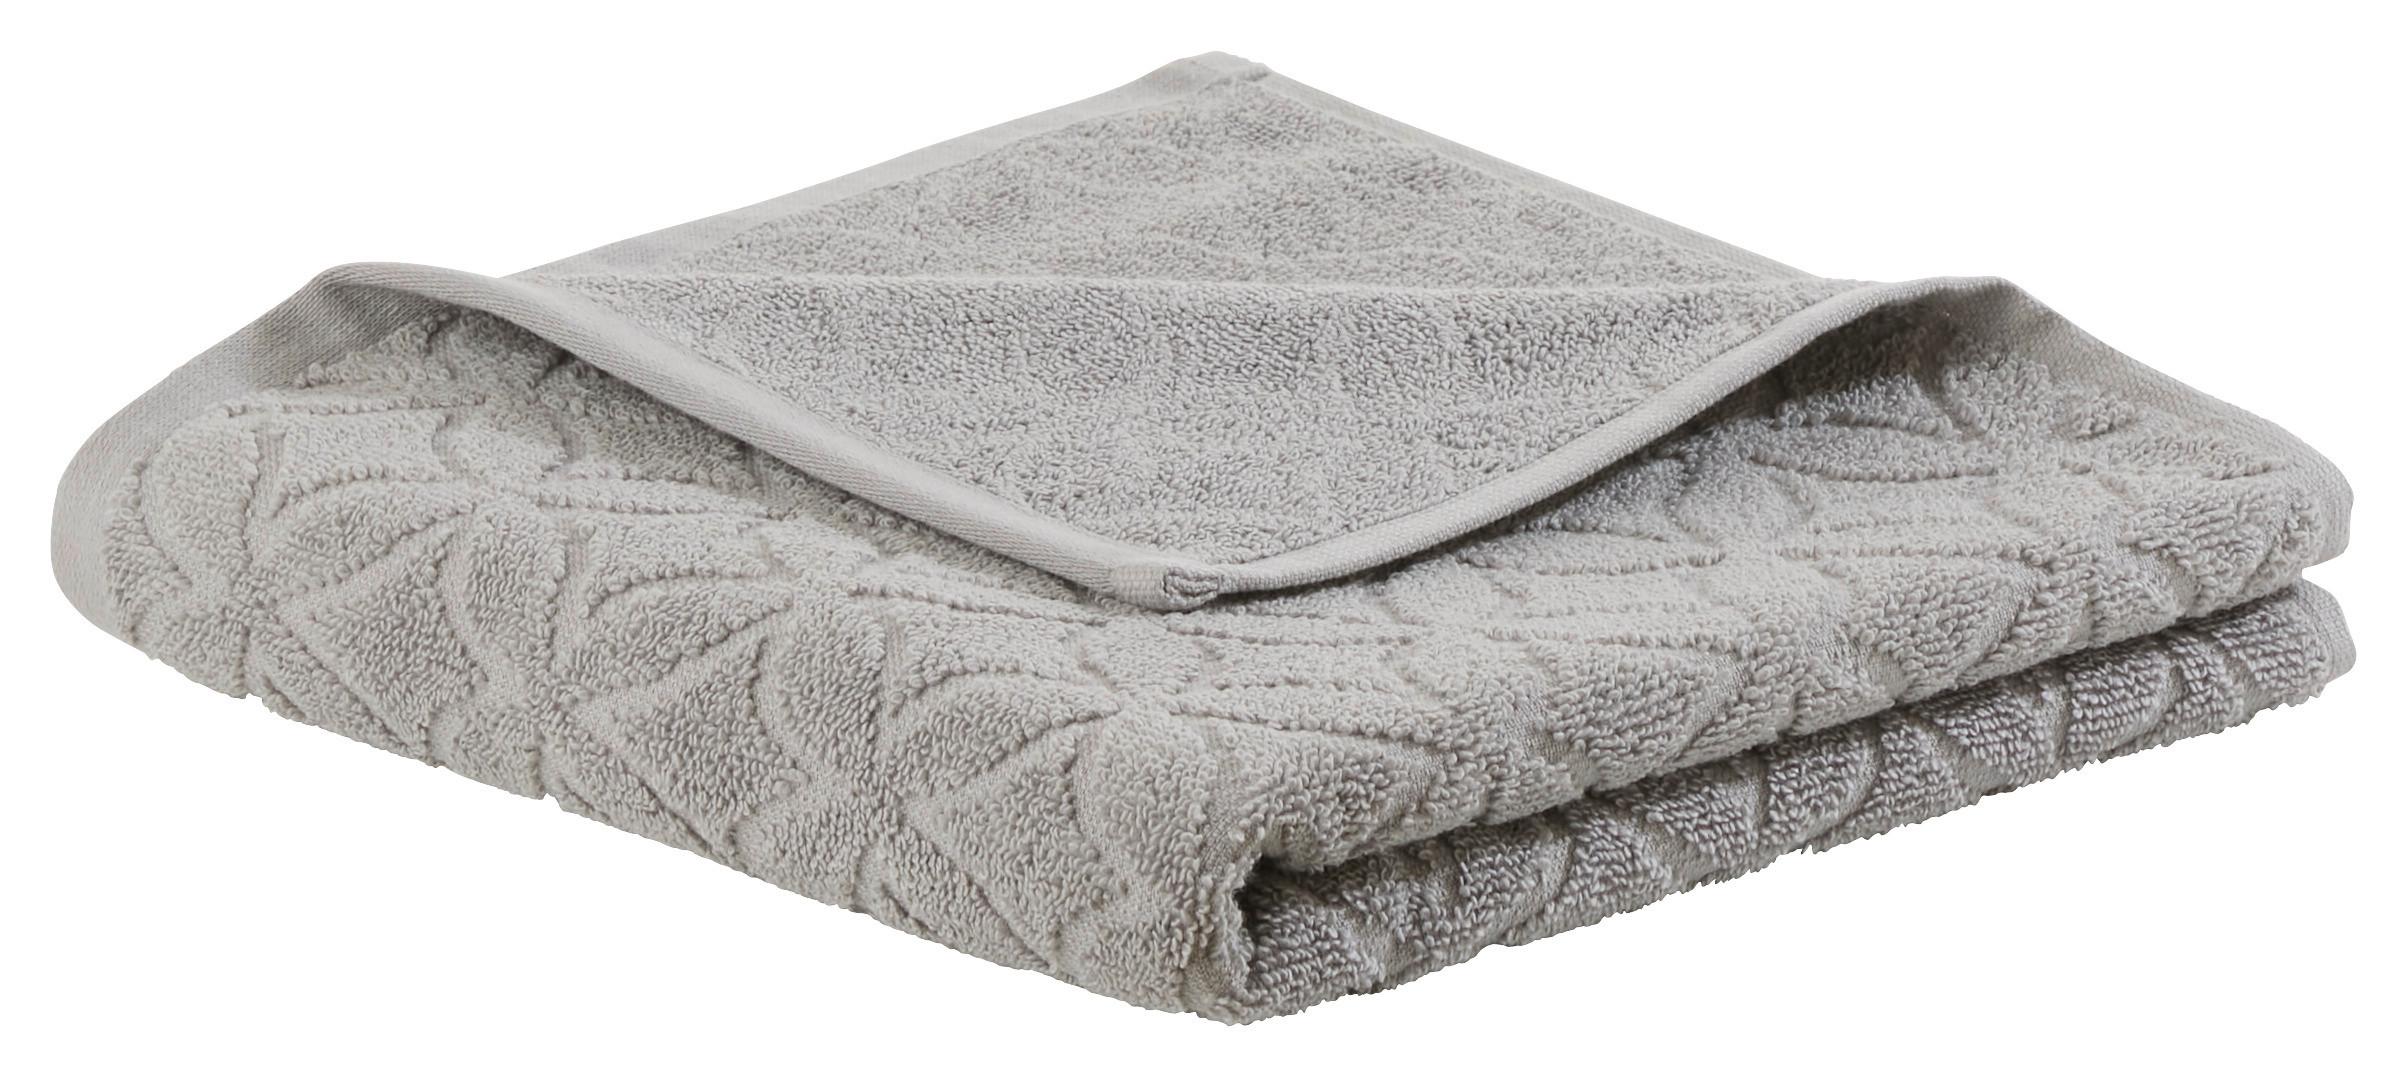 Handtuch Naime in Grau ca. 50x100cm - Grau, LIFESTYLE, Textil (50/100cm) - Modern Living